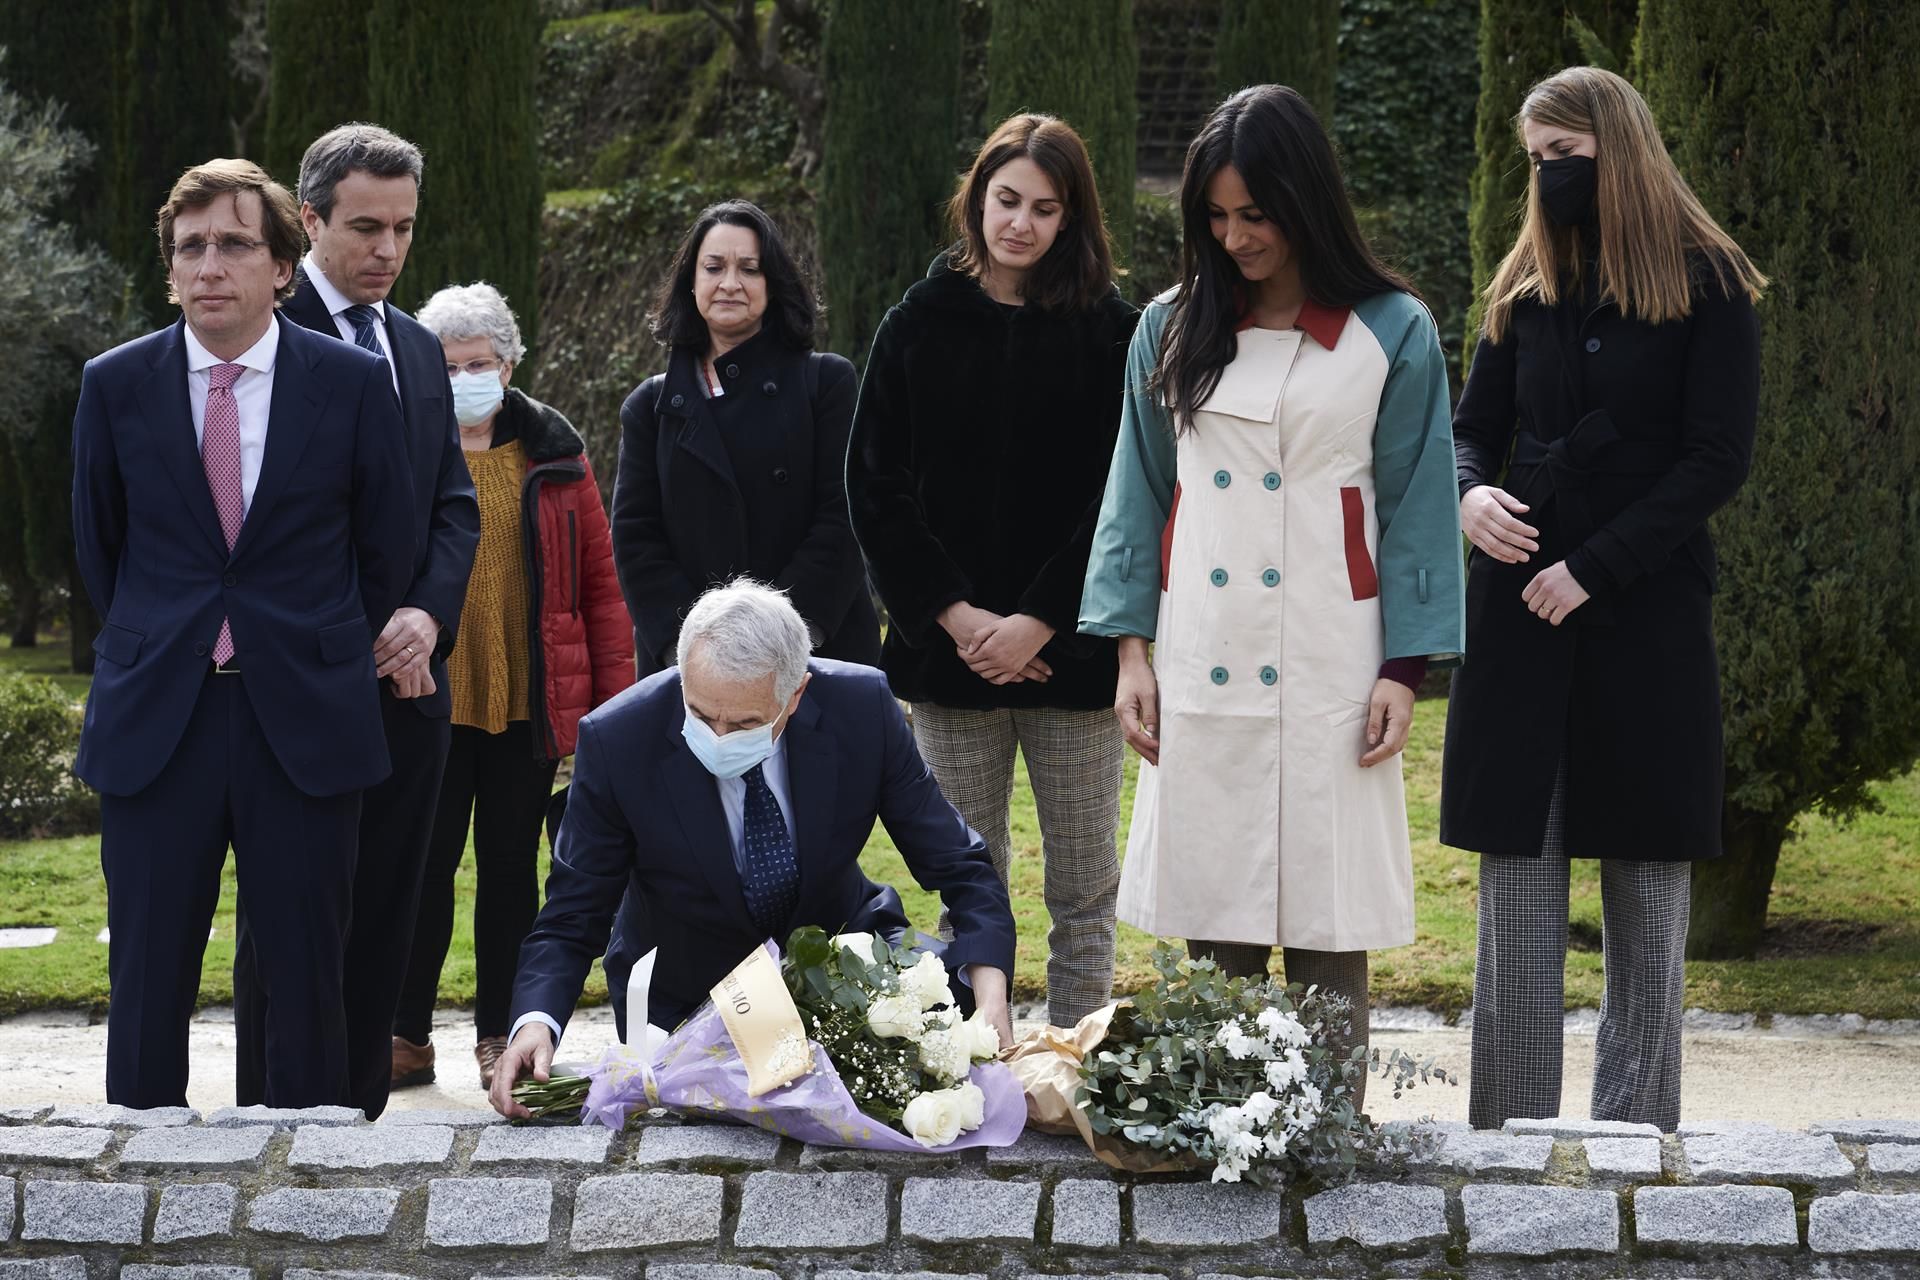 Madrid inaugura un memorial en homenaje a las víctimas de atentados del 11M